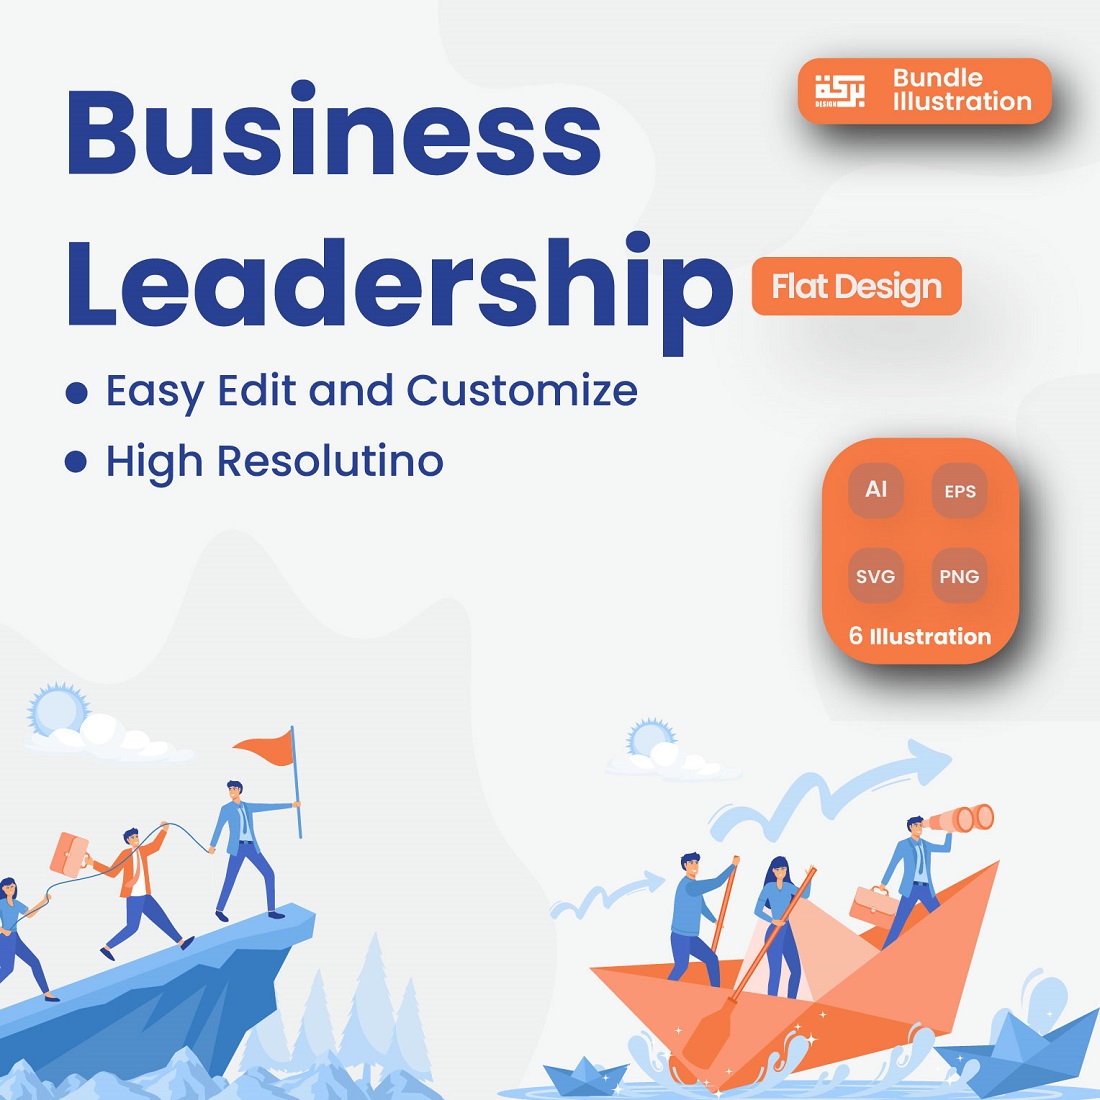 Leadership Illustration Design cover image.